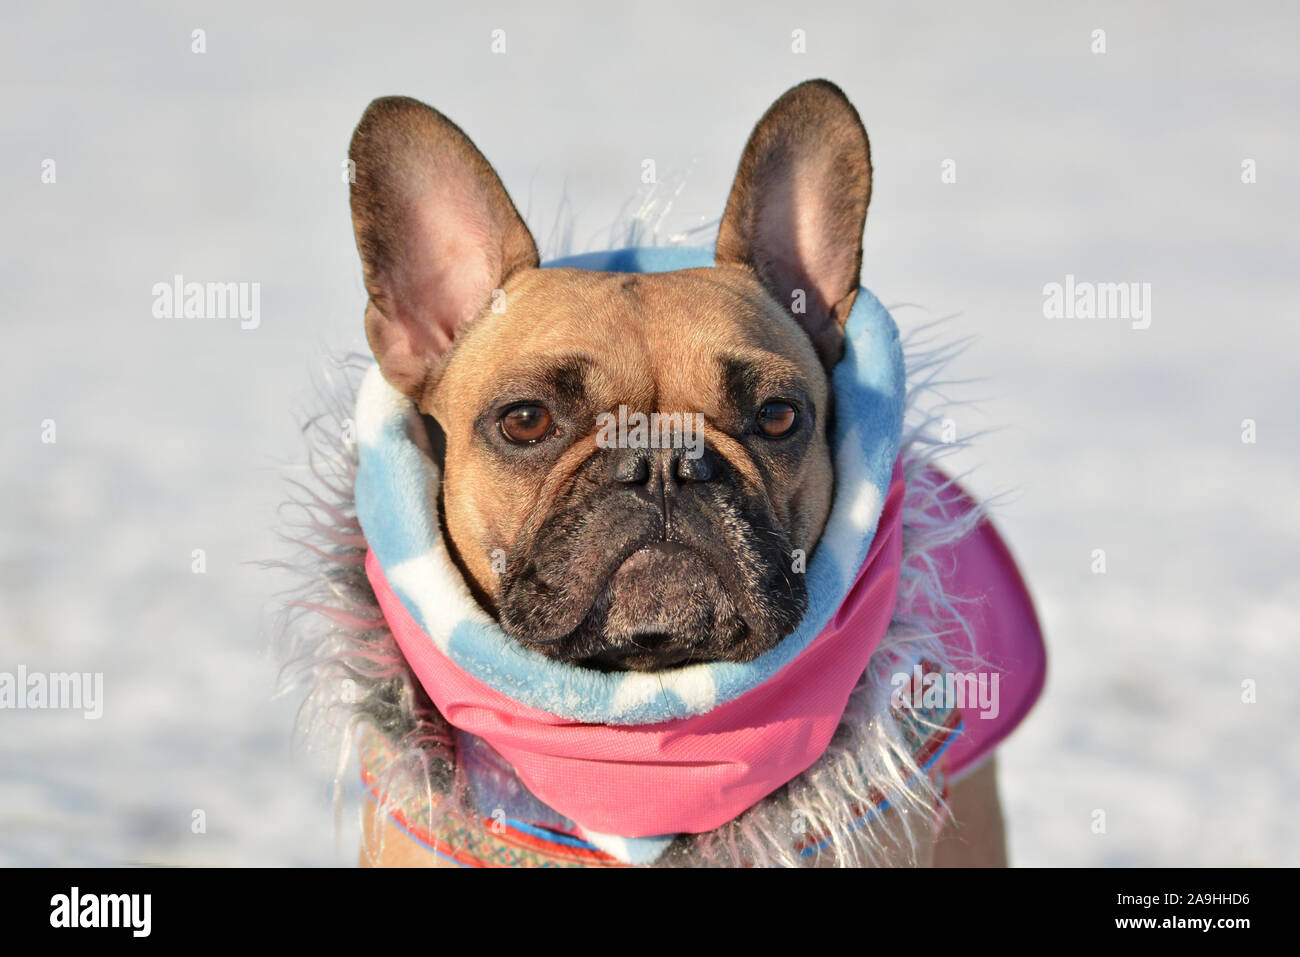 Testa di carino bulldog francese cane che indossa un rosa sciarpa invernale e pelliccia di fronte sfocata winter snow landscape in background Foto Stock